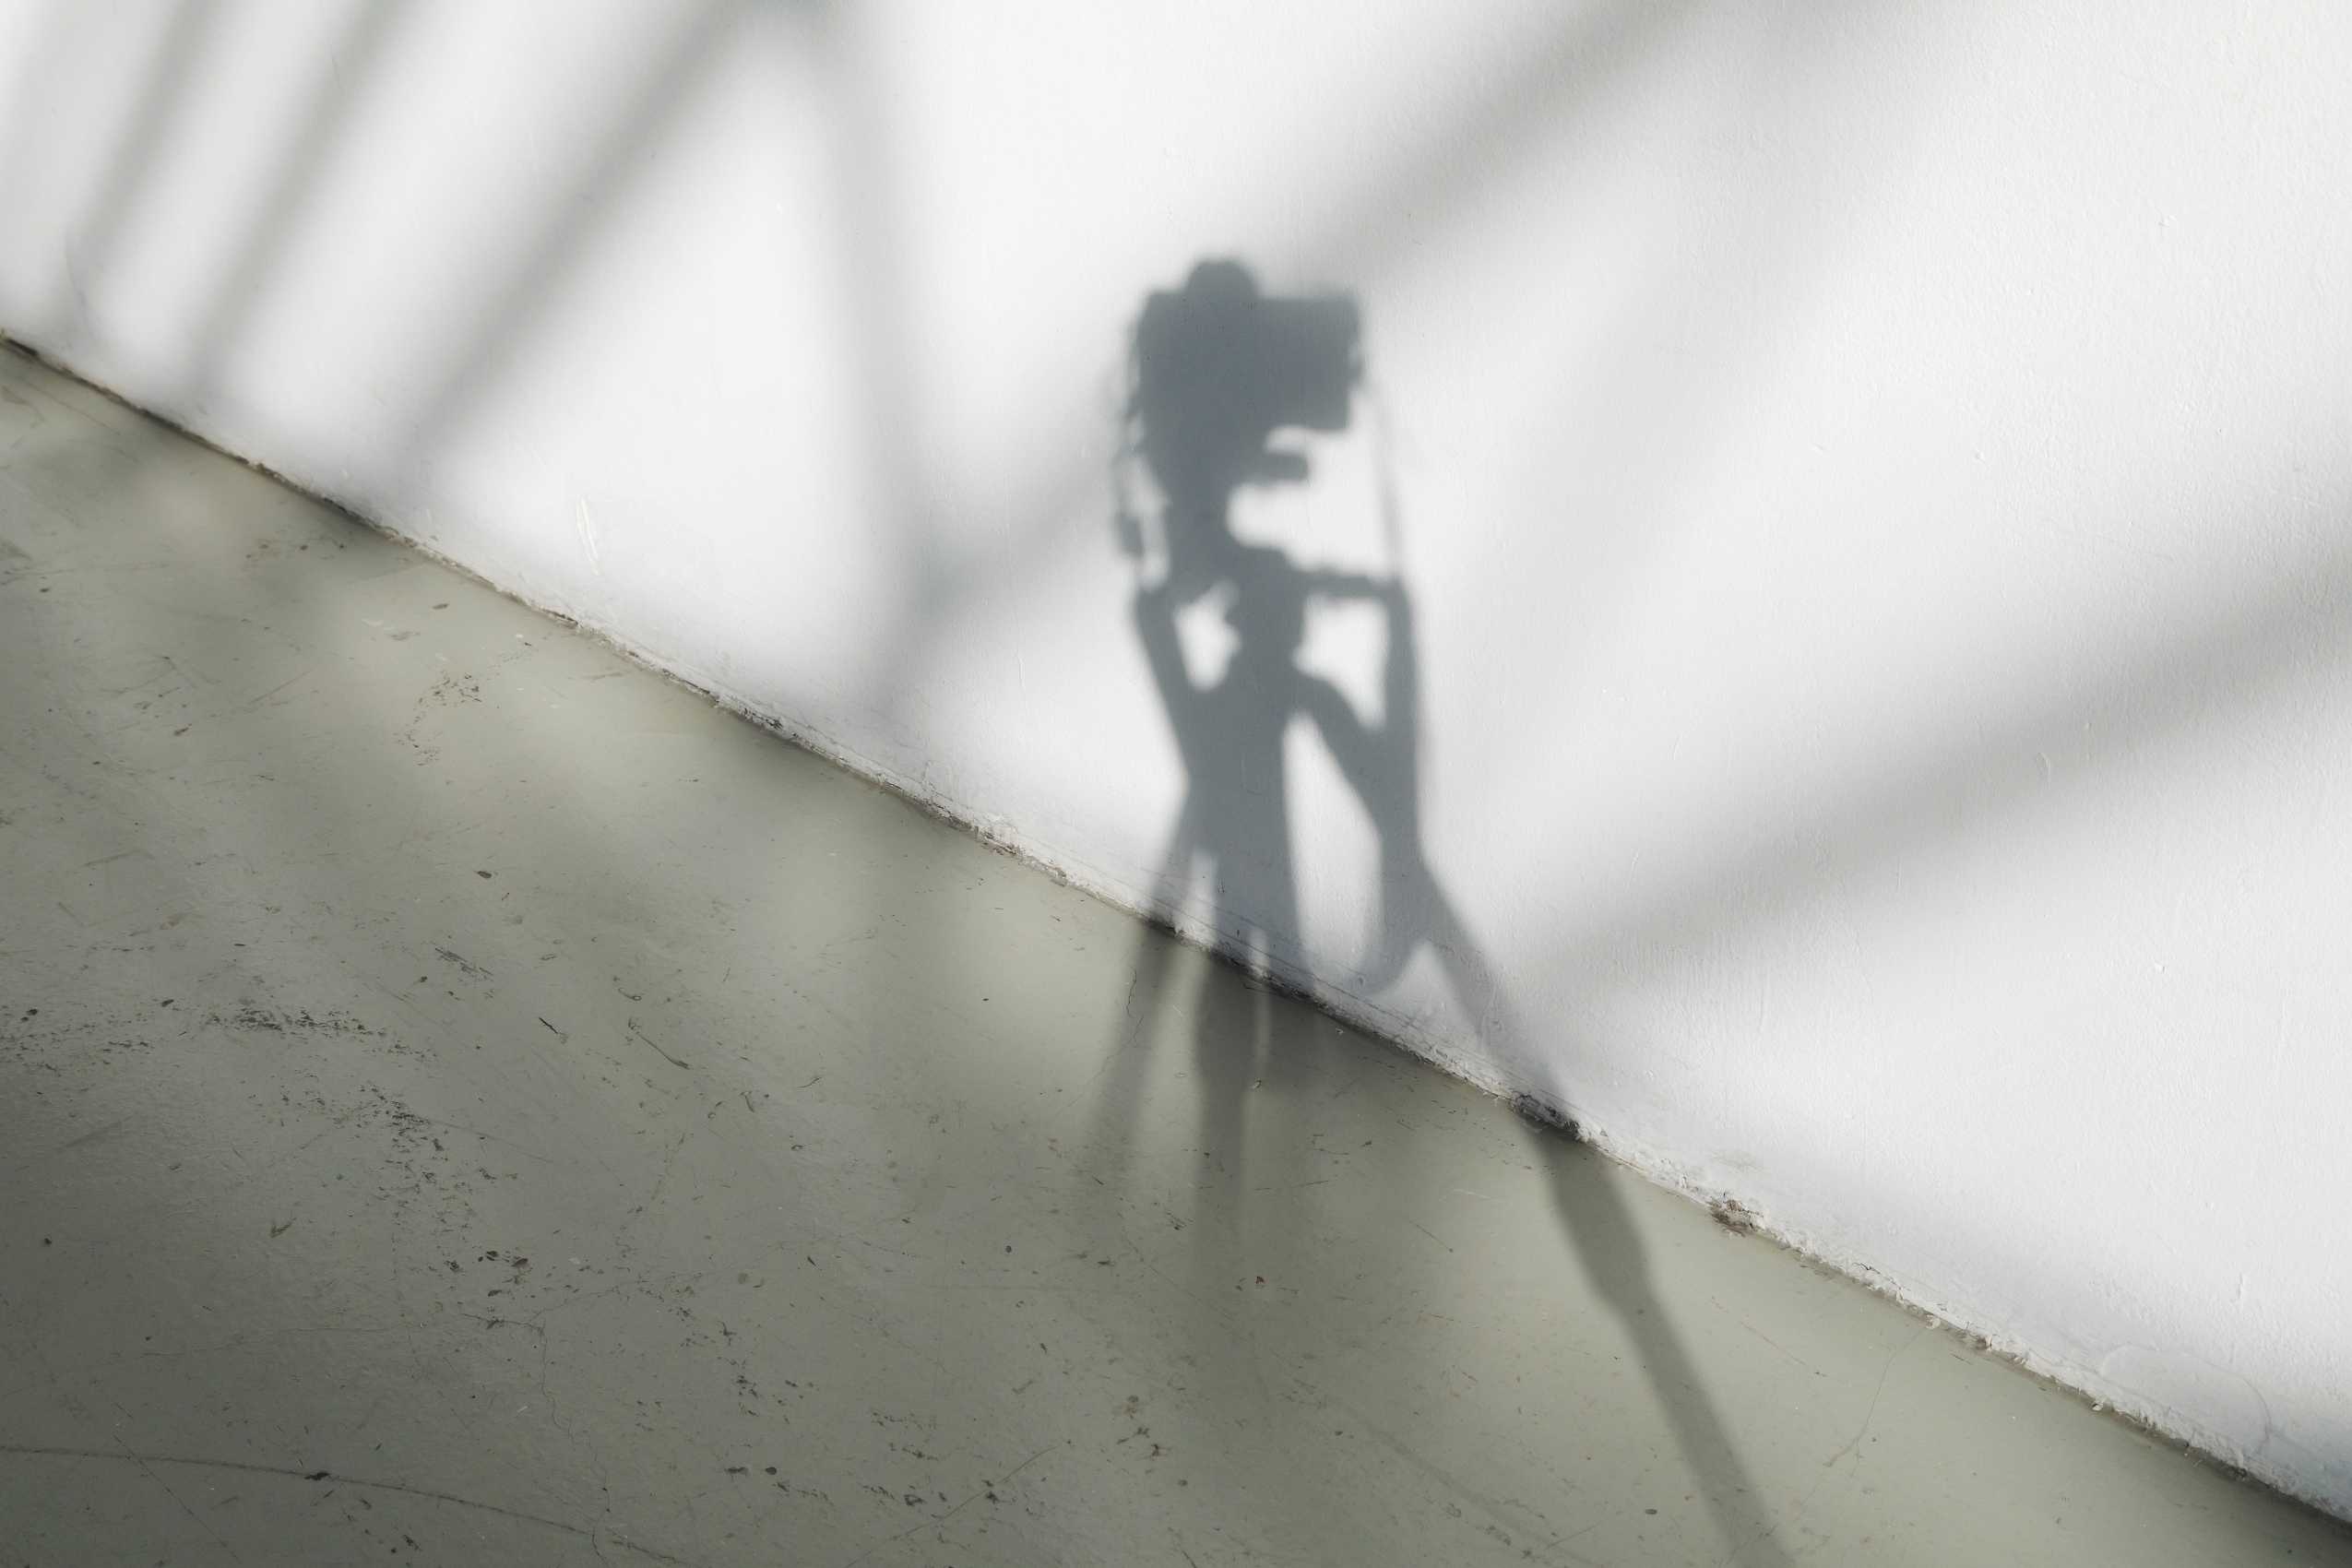 À l’intersection du sol gris et du mur blanc, l’ombre d’un appareil photo se reflète, flouté par la lumière.